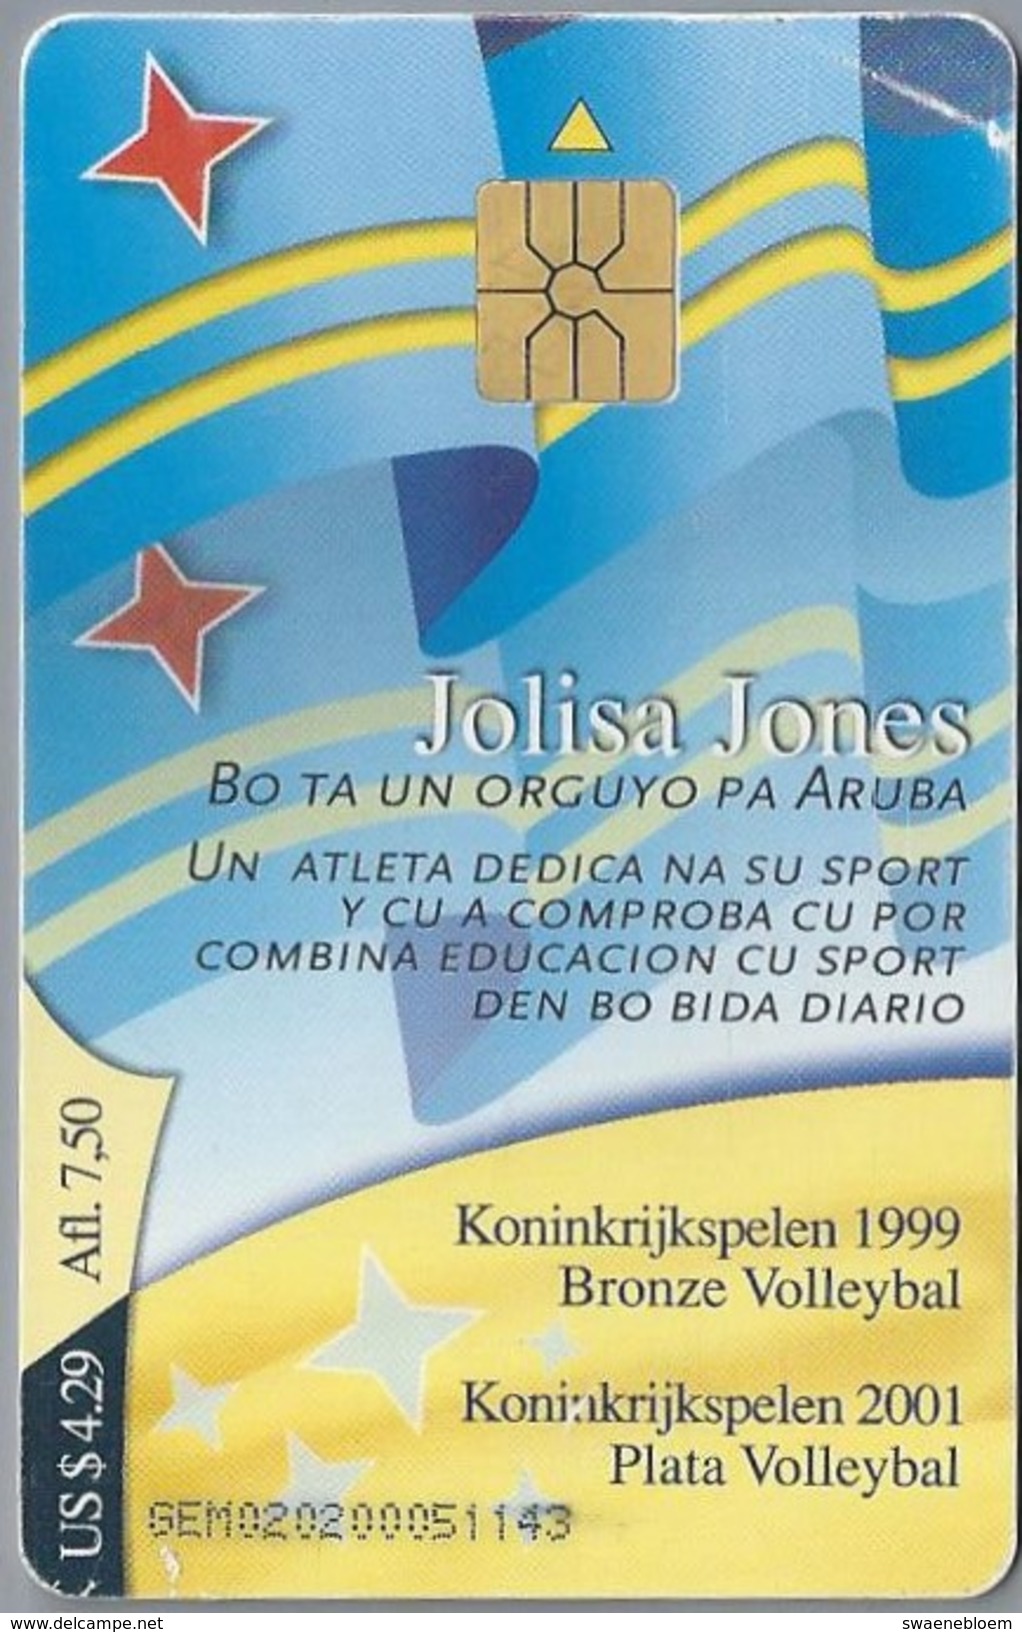 Telefoonkaart. ARUBA PHONE CARD. JULISA JONES. Koninkrijkspelen 1999. 2 Scans - Antilles (Neérlandaises)